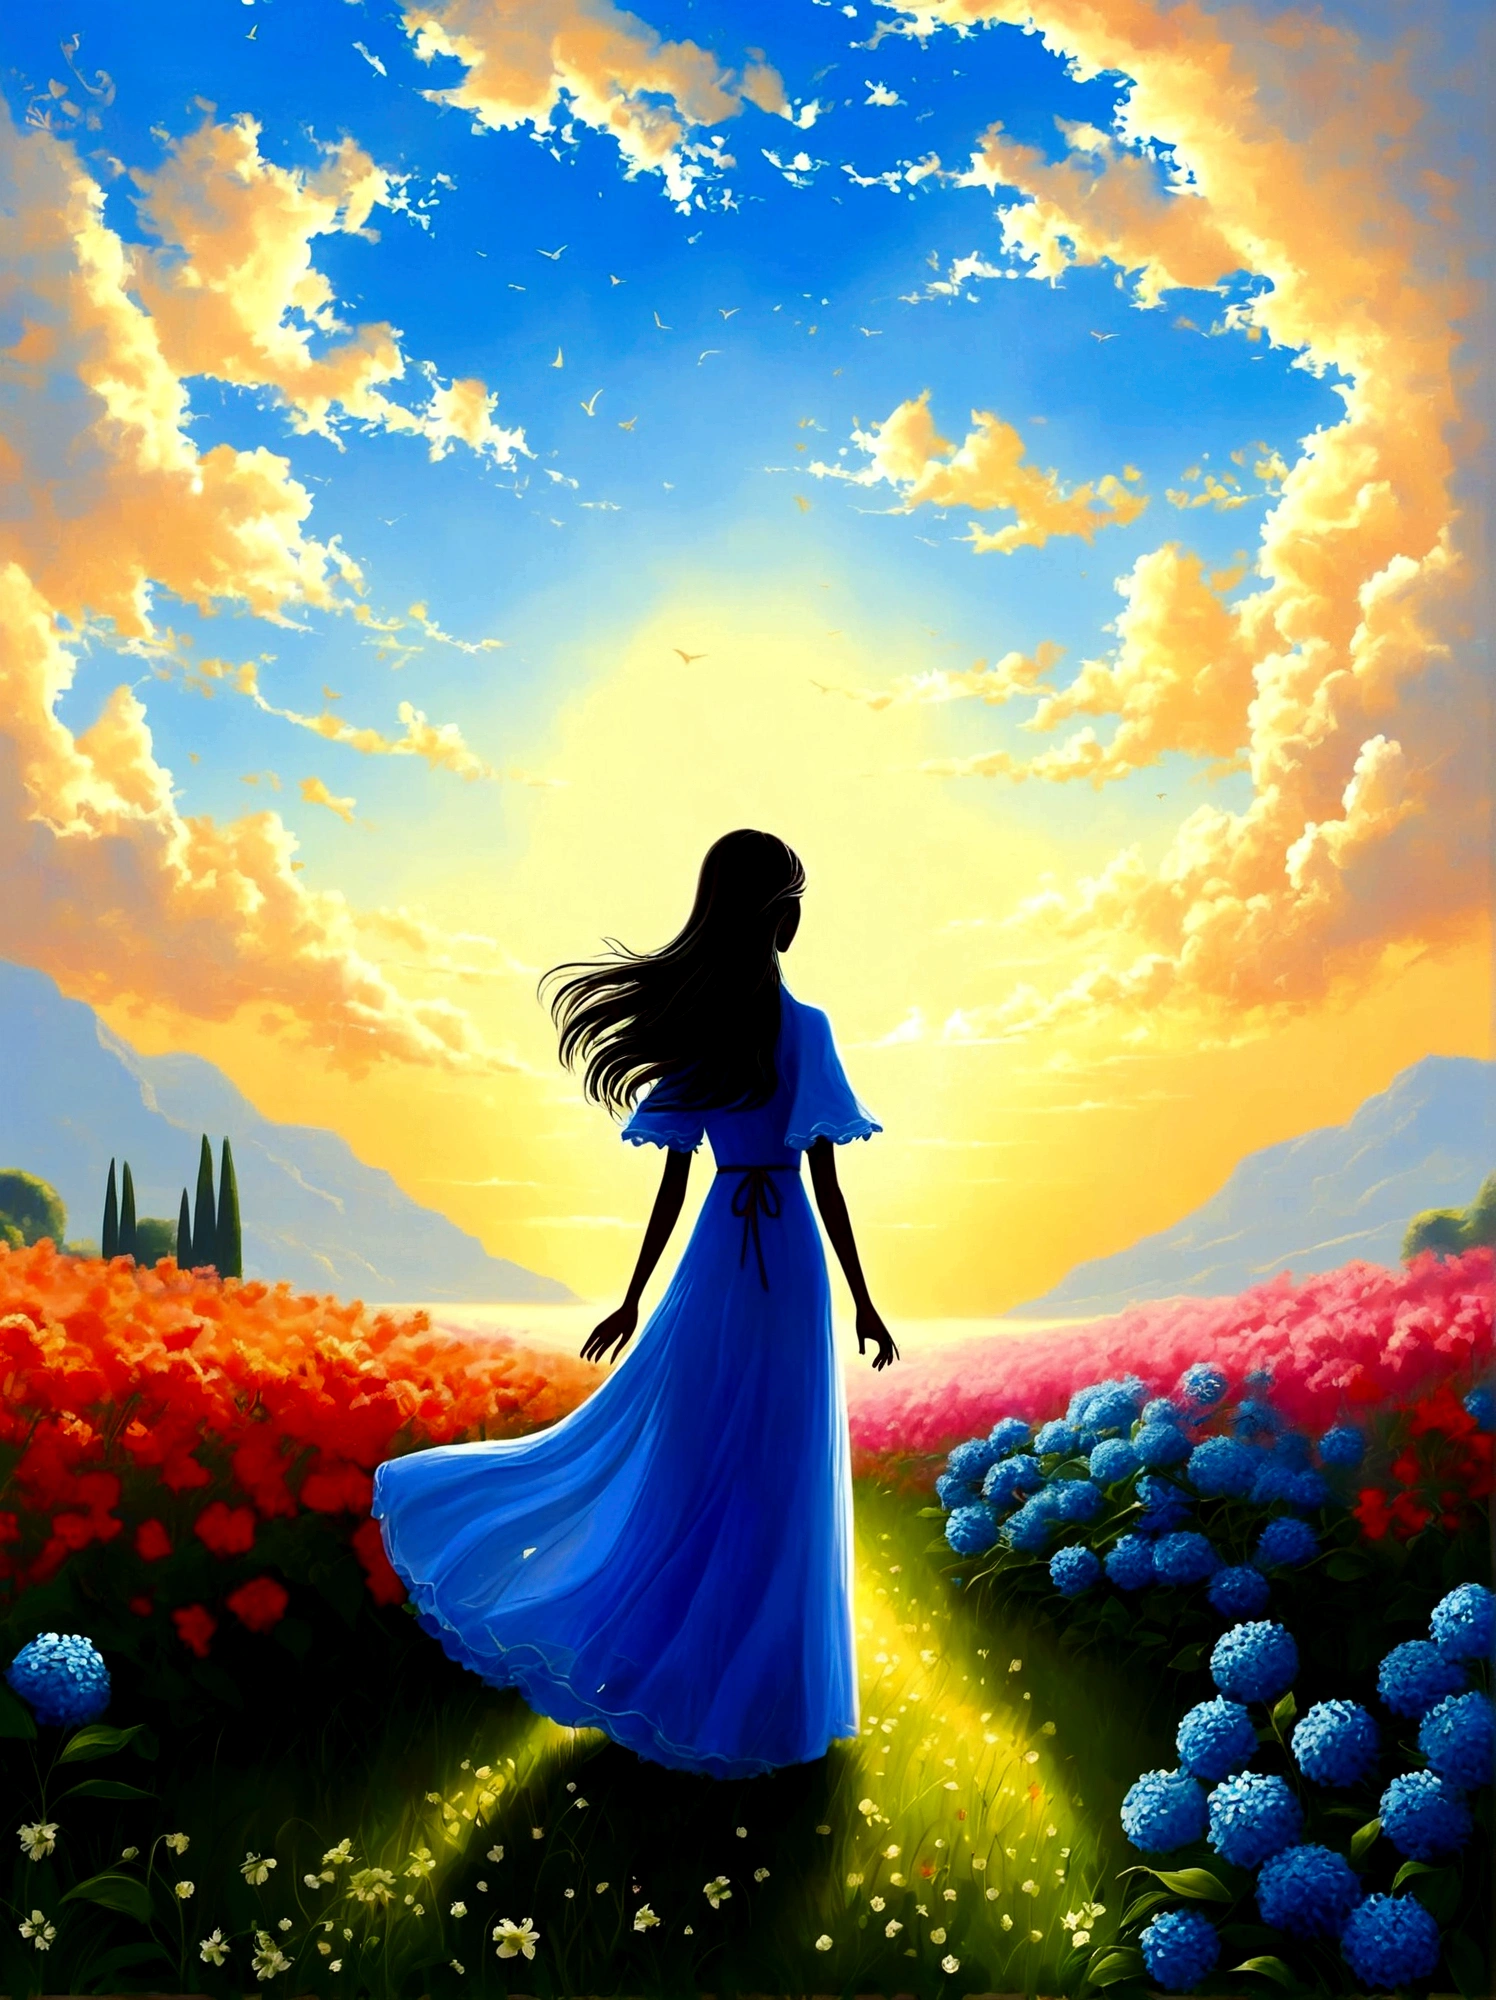 (黎明日出時間:1.6)，在芬芳的花园里, 盲女站在那裡，張開雙臂, 輕輕撫摸她遇到的花瓣, 與大自然和甜美的藍色花朵相連, 個體在廣闊的天空下充滿敬畏和驚奇地矗立著, 他們的剪影與色彩鮮豔的晨光形成鮮明對比, 他們正處於深深的沉思狀態, 他們周圍寧靜的氣氛訴說著安寧和孤獨, 該視角是廣角視圖，強調充滿自然元素的令人驚嘆的景觀的廣闊範圍, 影像應透過有效利用光影來喚起戲劇性和規模感.